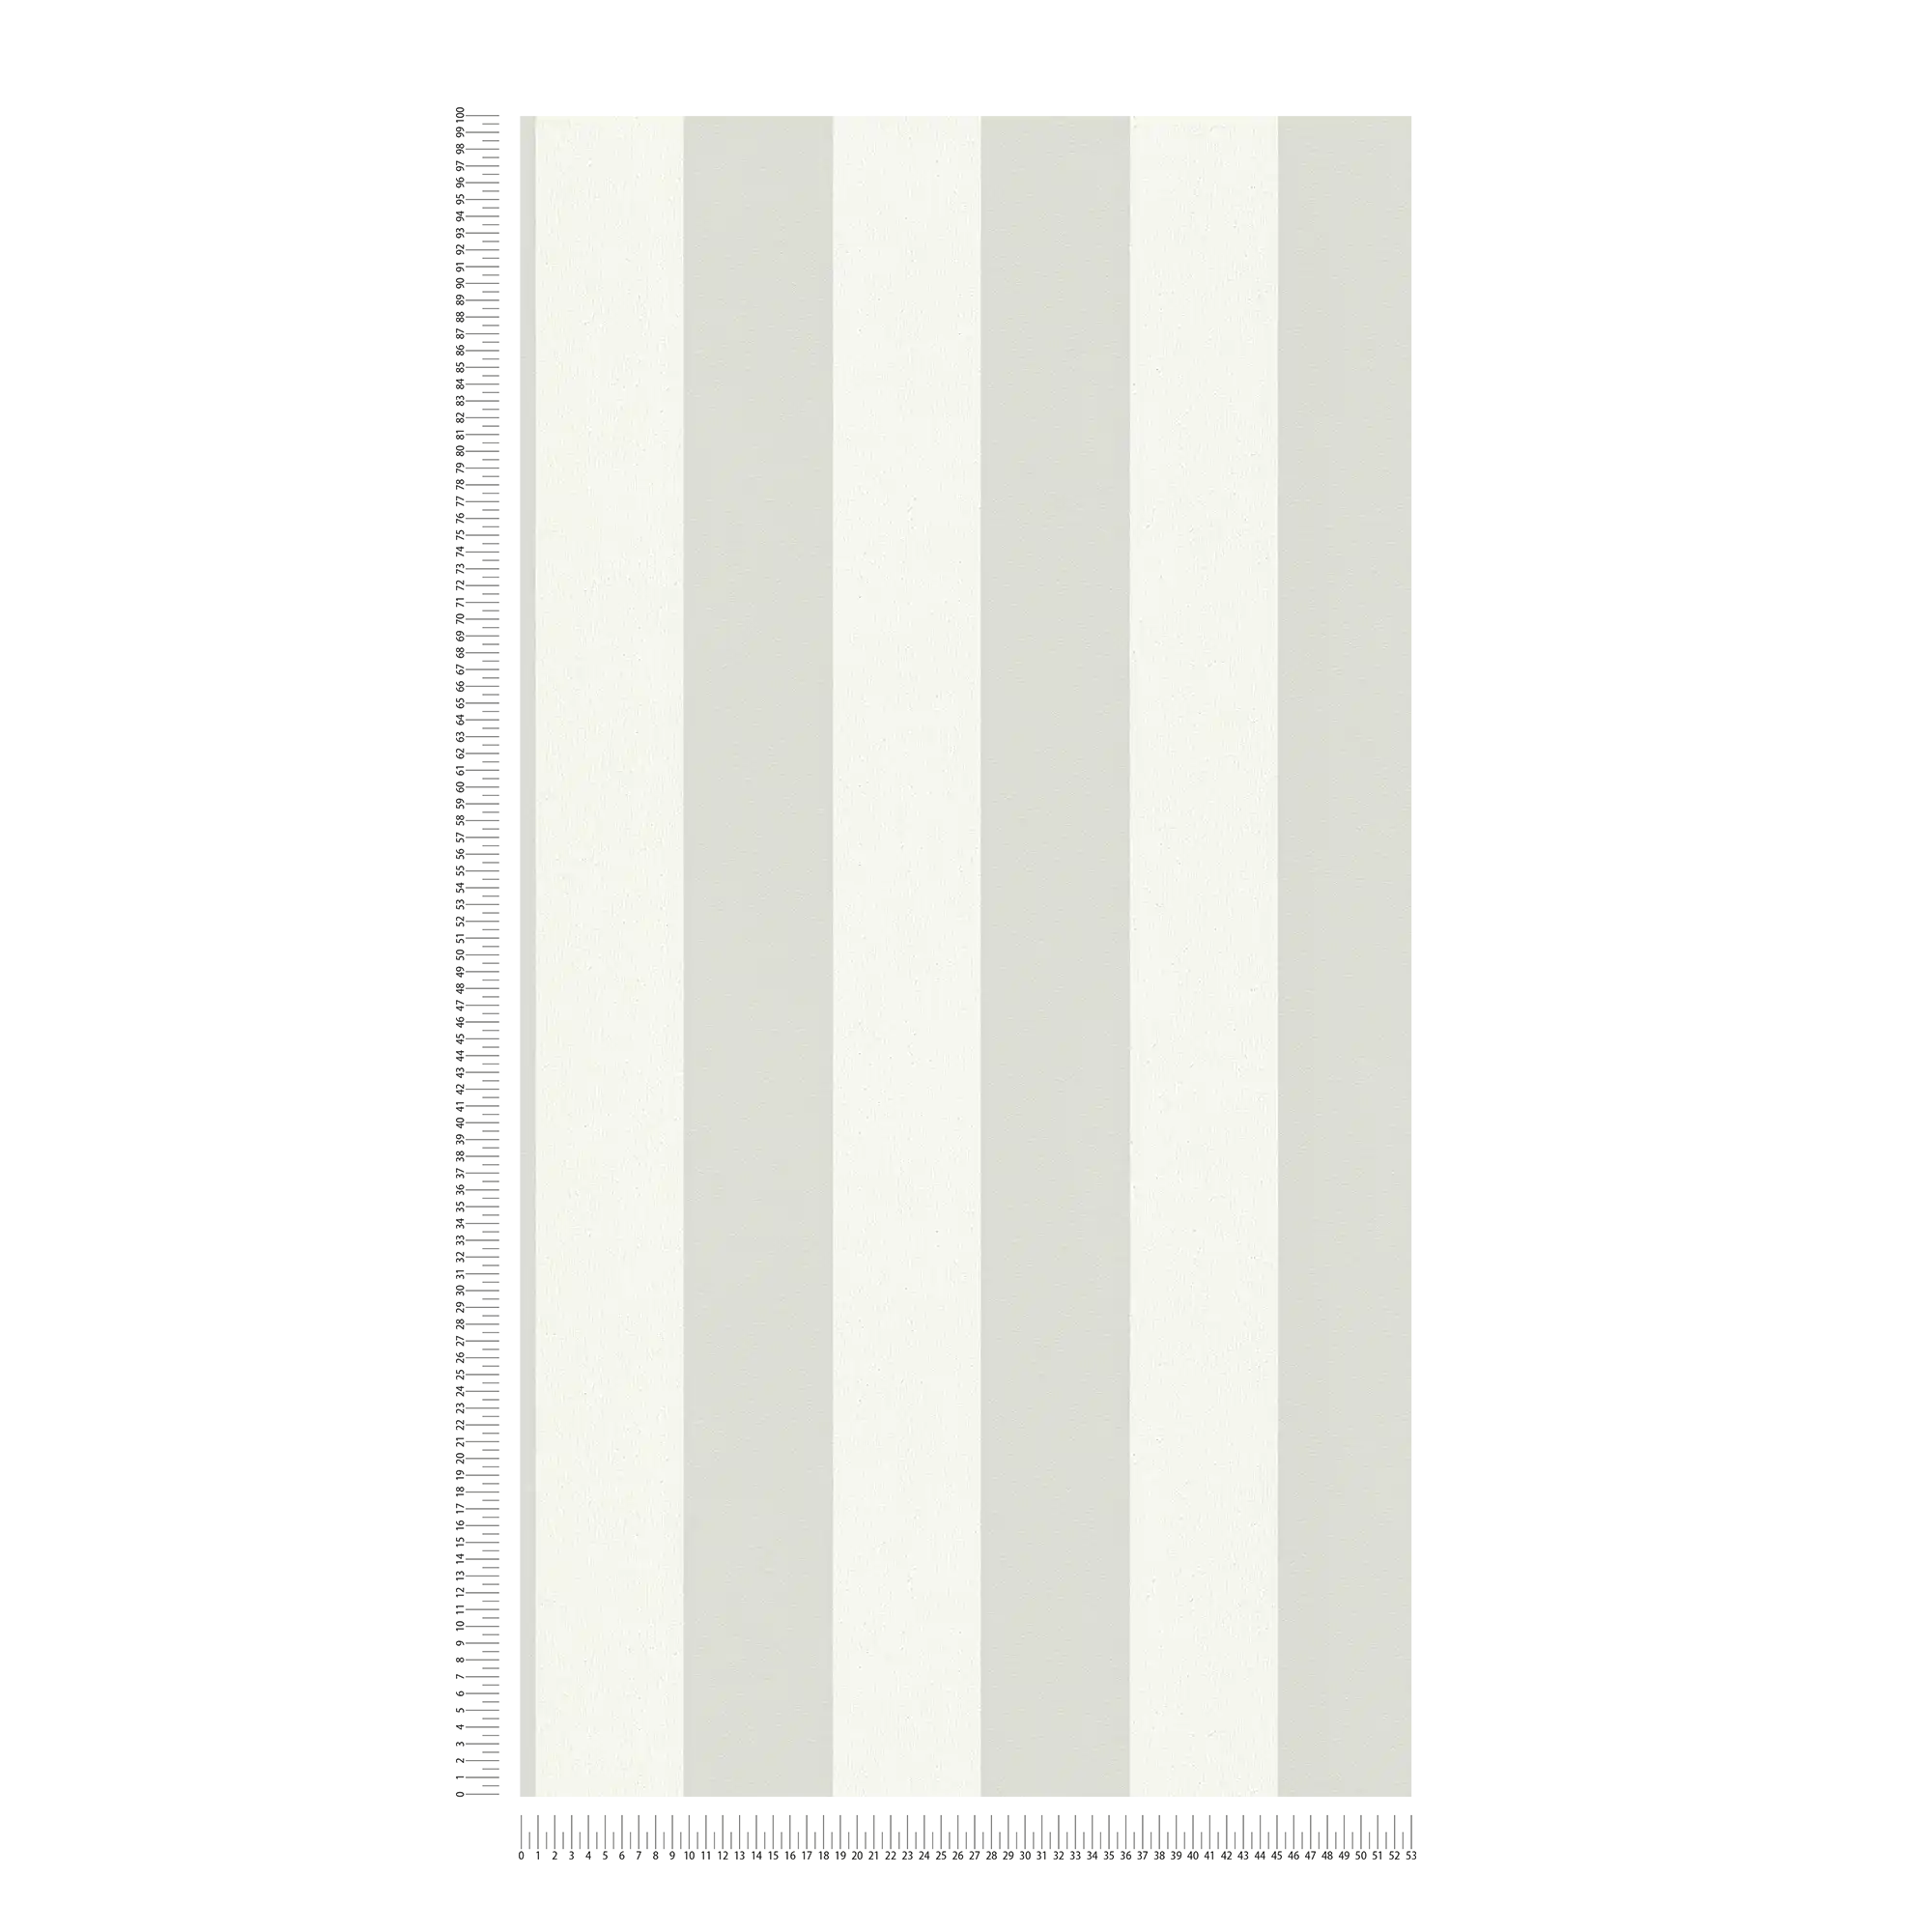             Papel pintado de rayas con textura, rayas en bloque gris y blanco
        